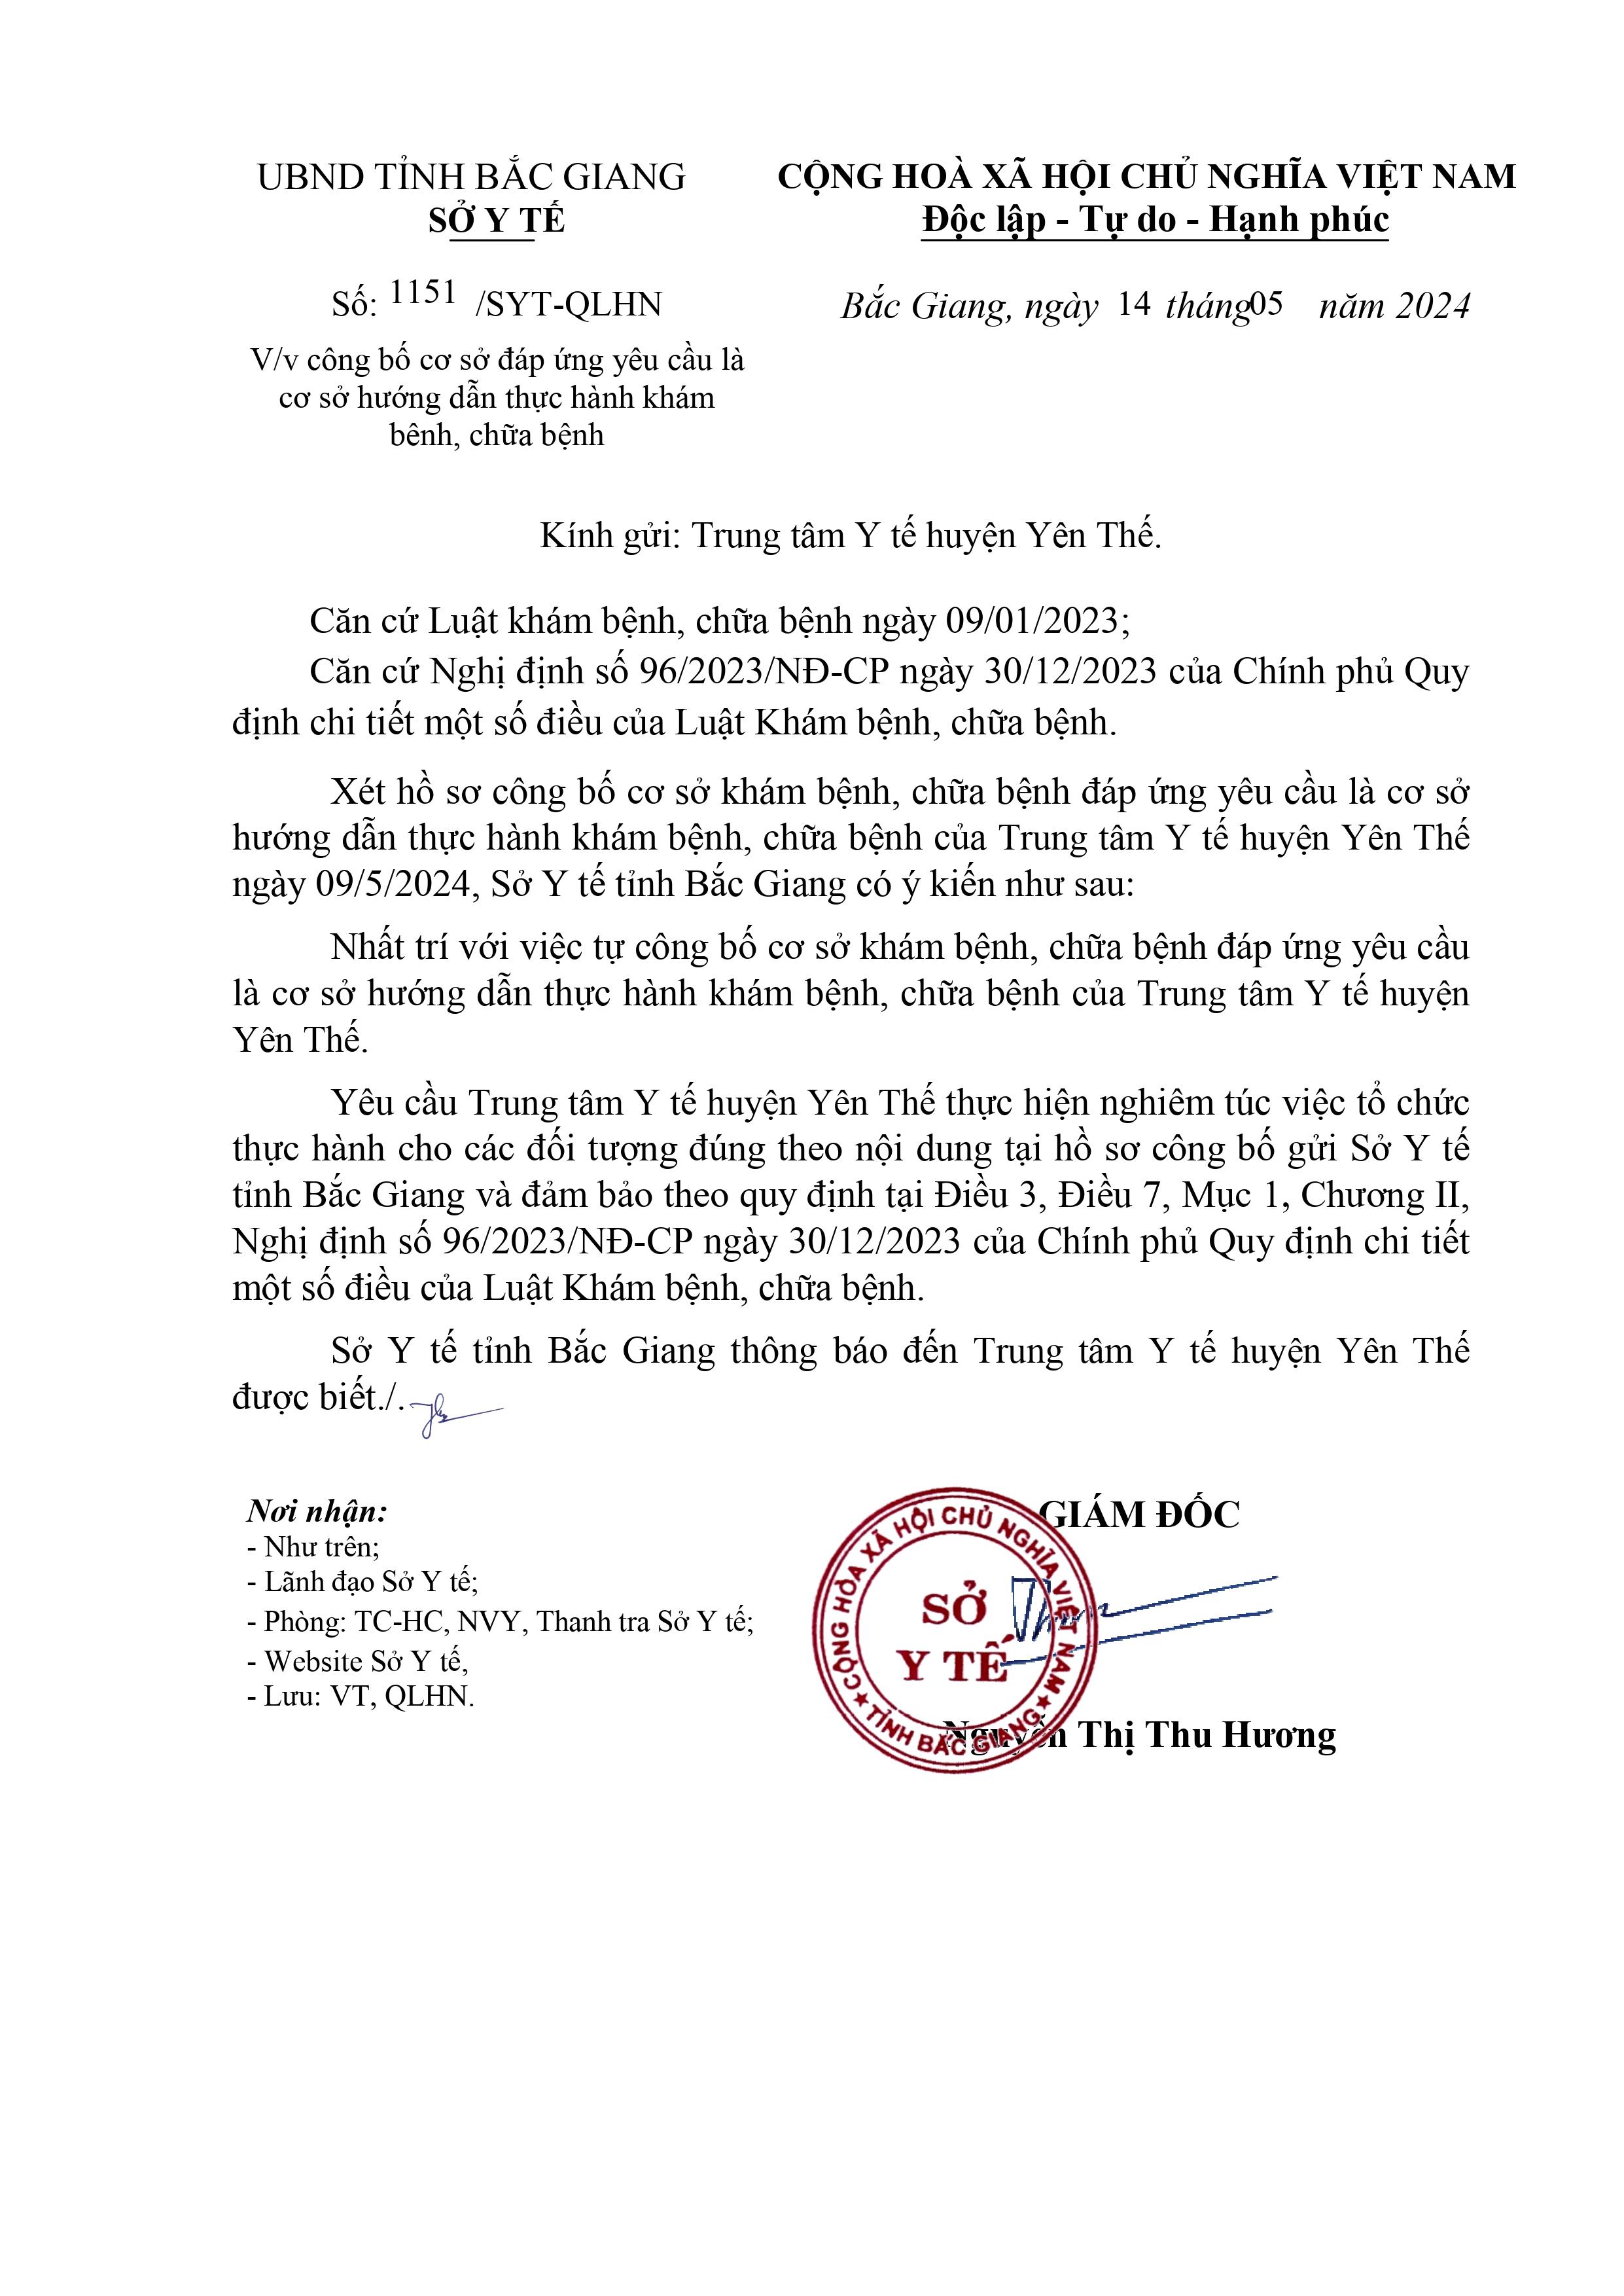 Trung tâm Y tế huyện Yên Thế được công bố là cơ sở hướng dẫn thực hành khám bệnh, chữa bệnh|https://trungtamytehuyenyenthe.vn/chi-tiet-tin-tuc/-/asset_publisher/M0UUAFstbTMq/content/trung-tam-y-te-huyen-yen-the-uoc-cong-bo-la-co-so-huong-dan-thuc-hanh-kham-benh-chua-benh